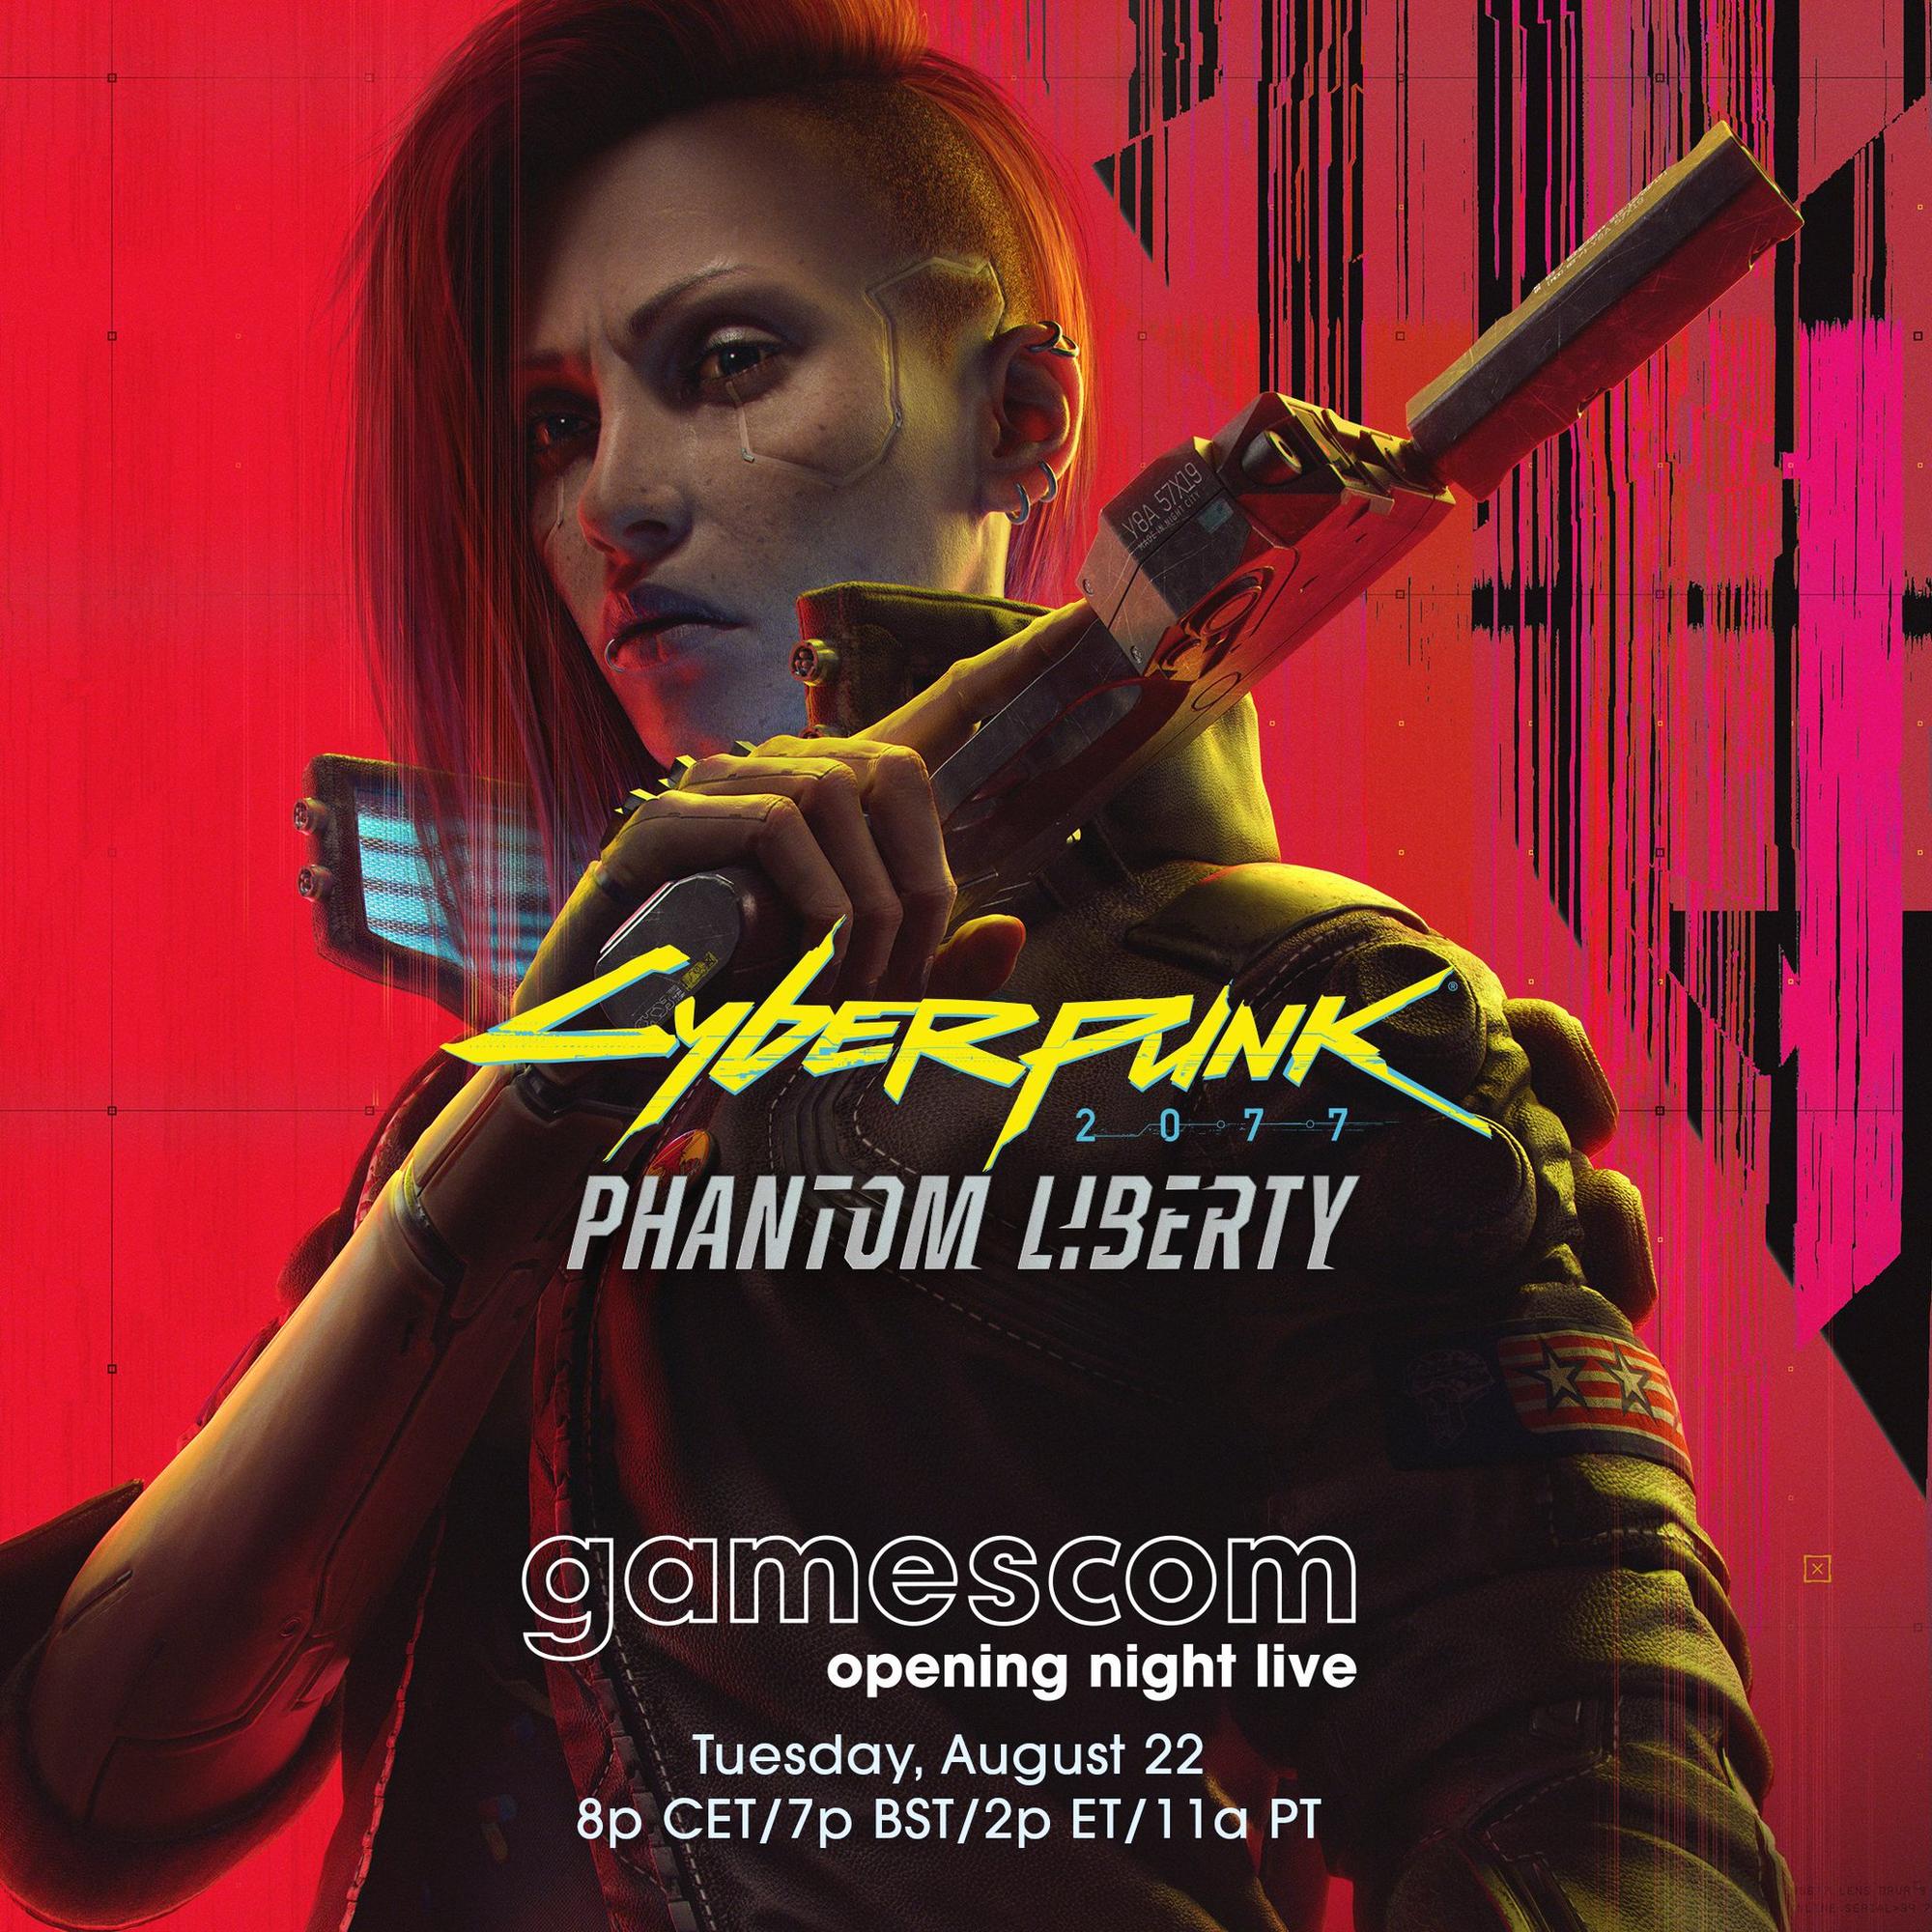 Gamescom 2023 | ANA KONU | 22 - 27 Ağustos!!